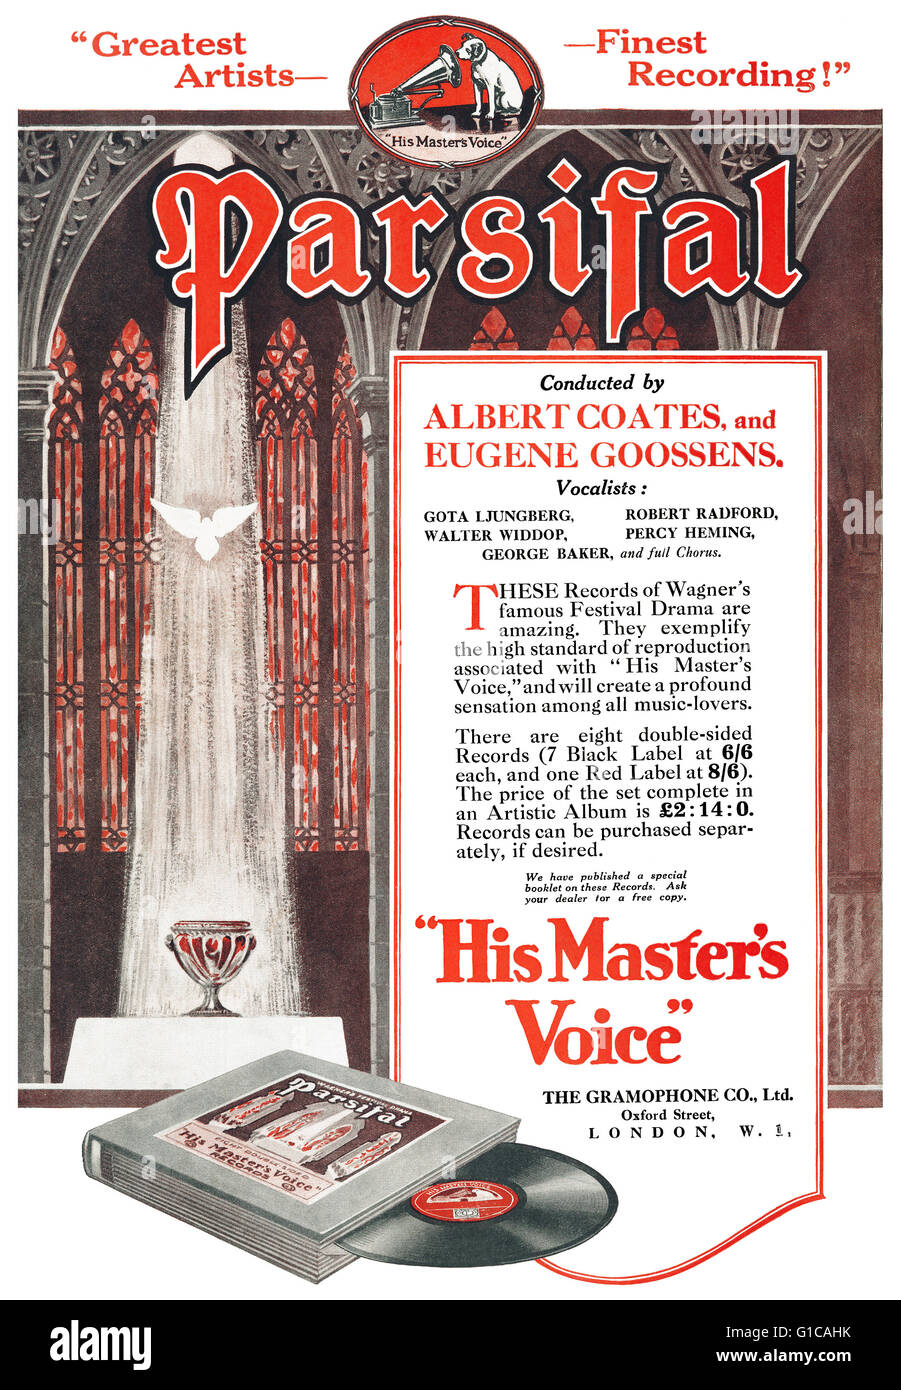 1925 UK anuncio para una grabación de Richard Wagner Parsifal en la etiqueta de la voz de su amo. Foto de stock